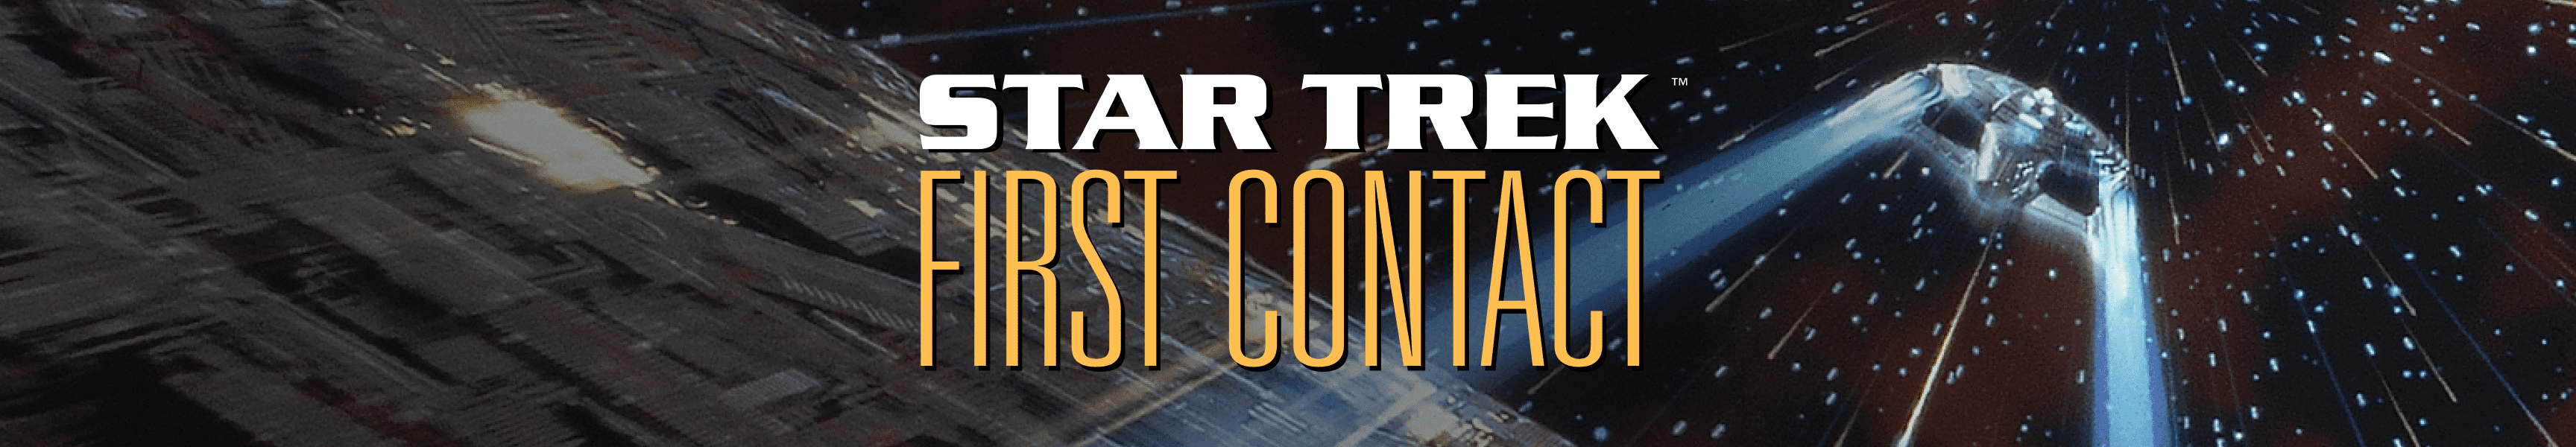 Star Trek: premier contact